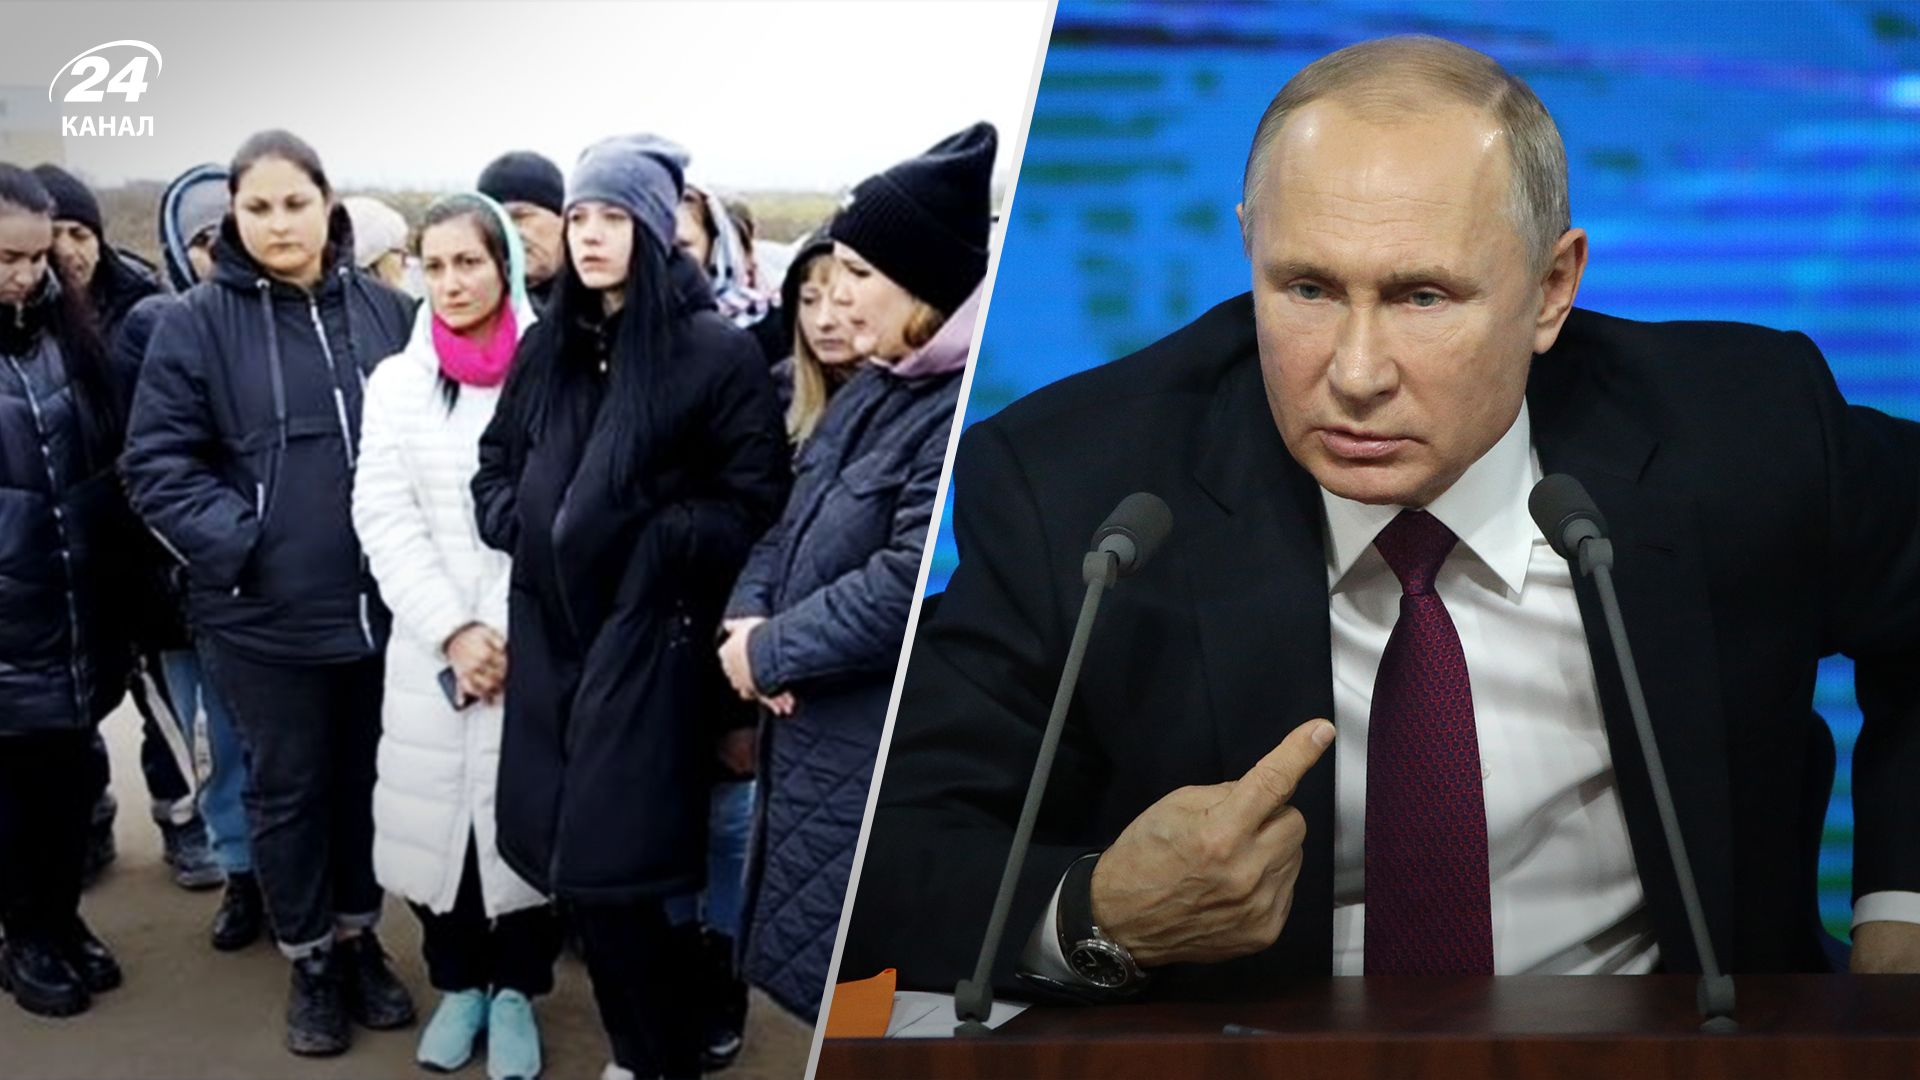 Сюрпризи на виборах президента Росії - як росіян змушують голосувати на виборах - 24 Канал